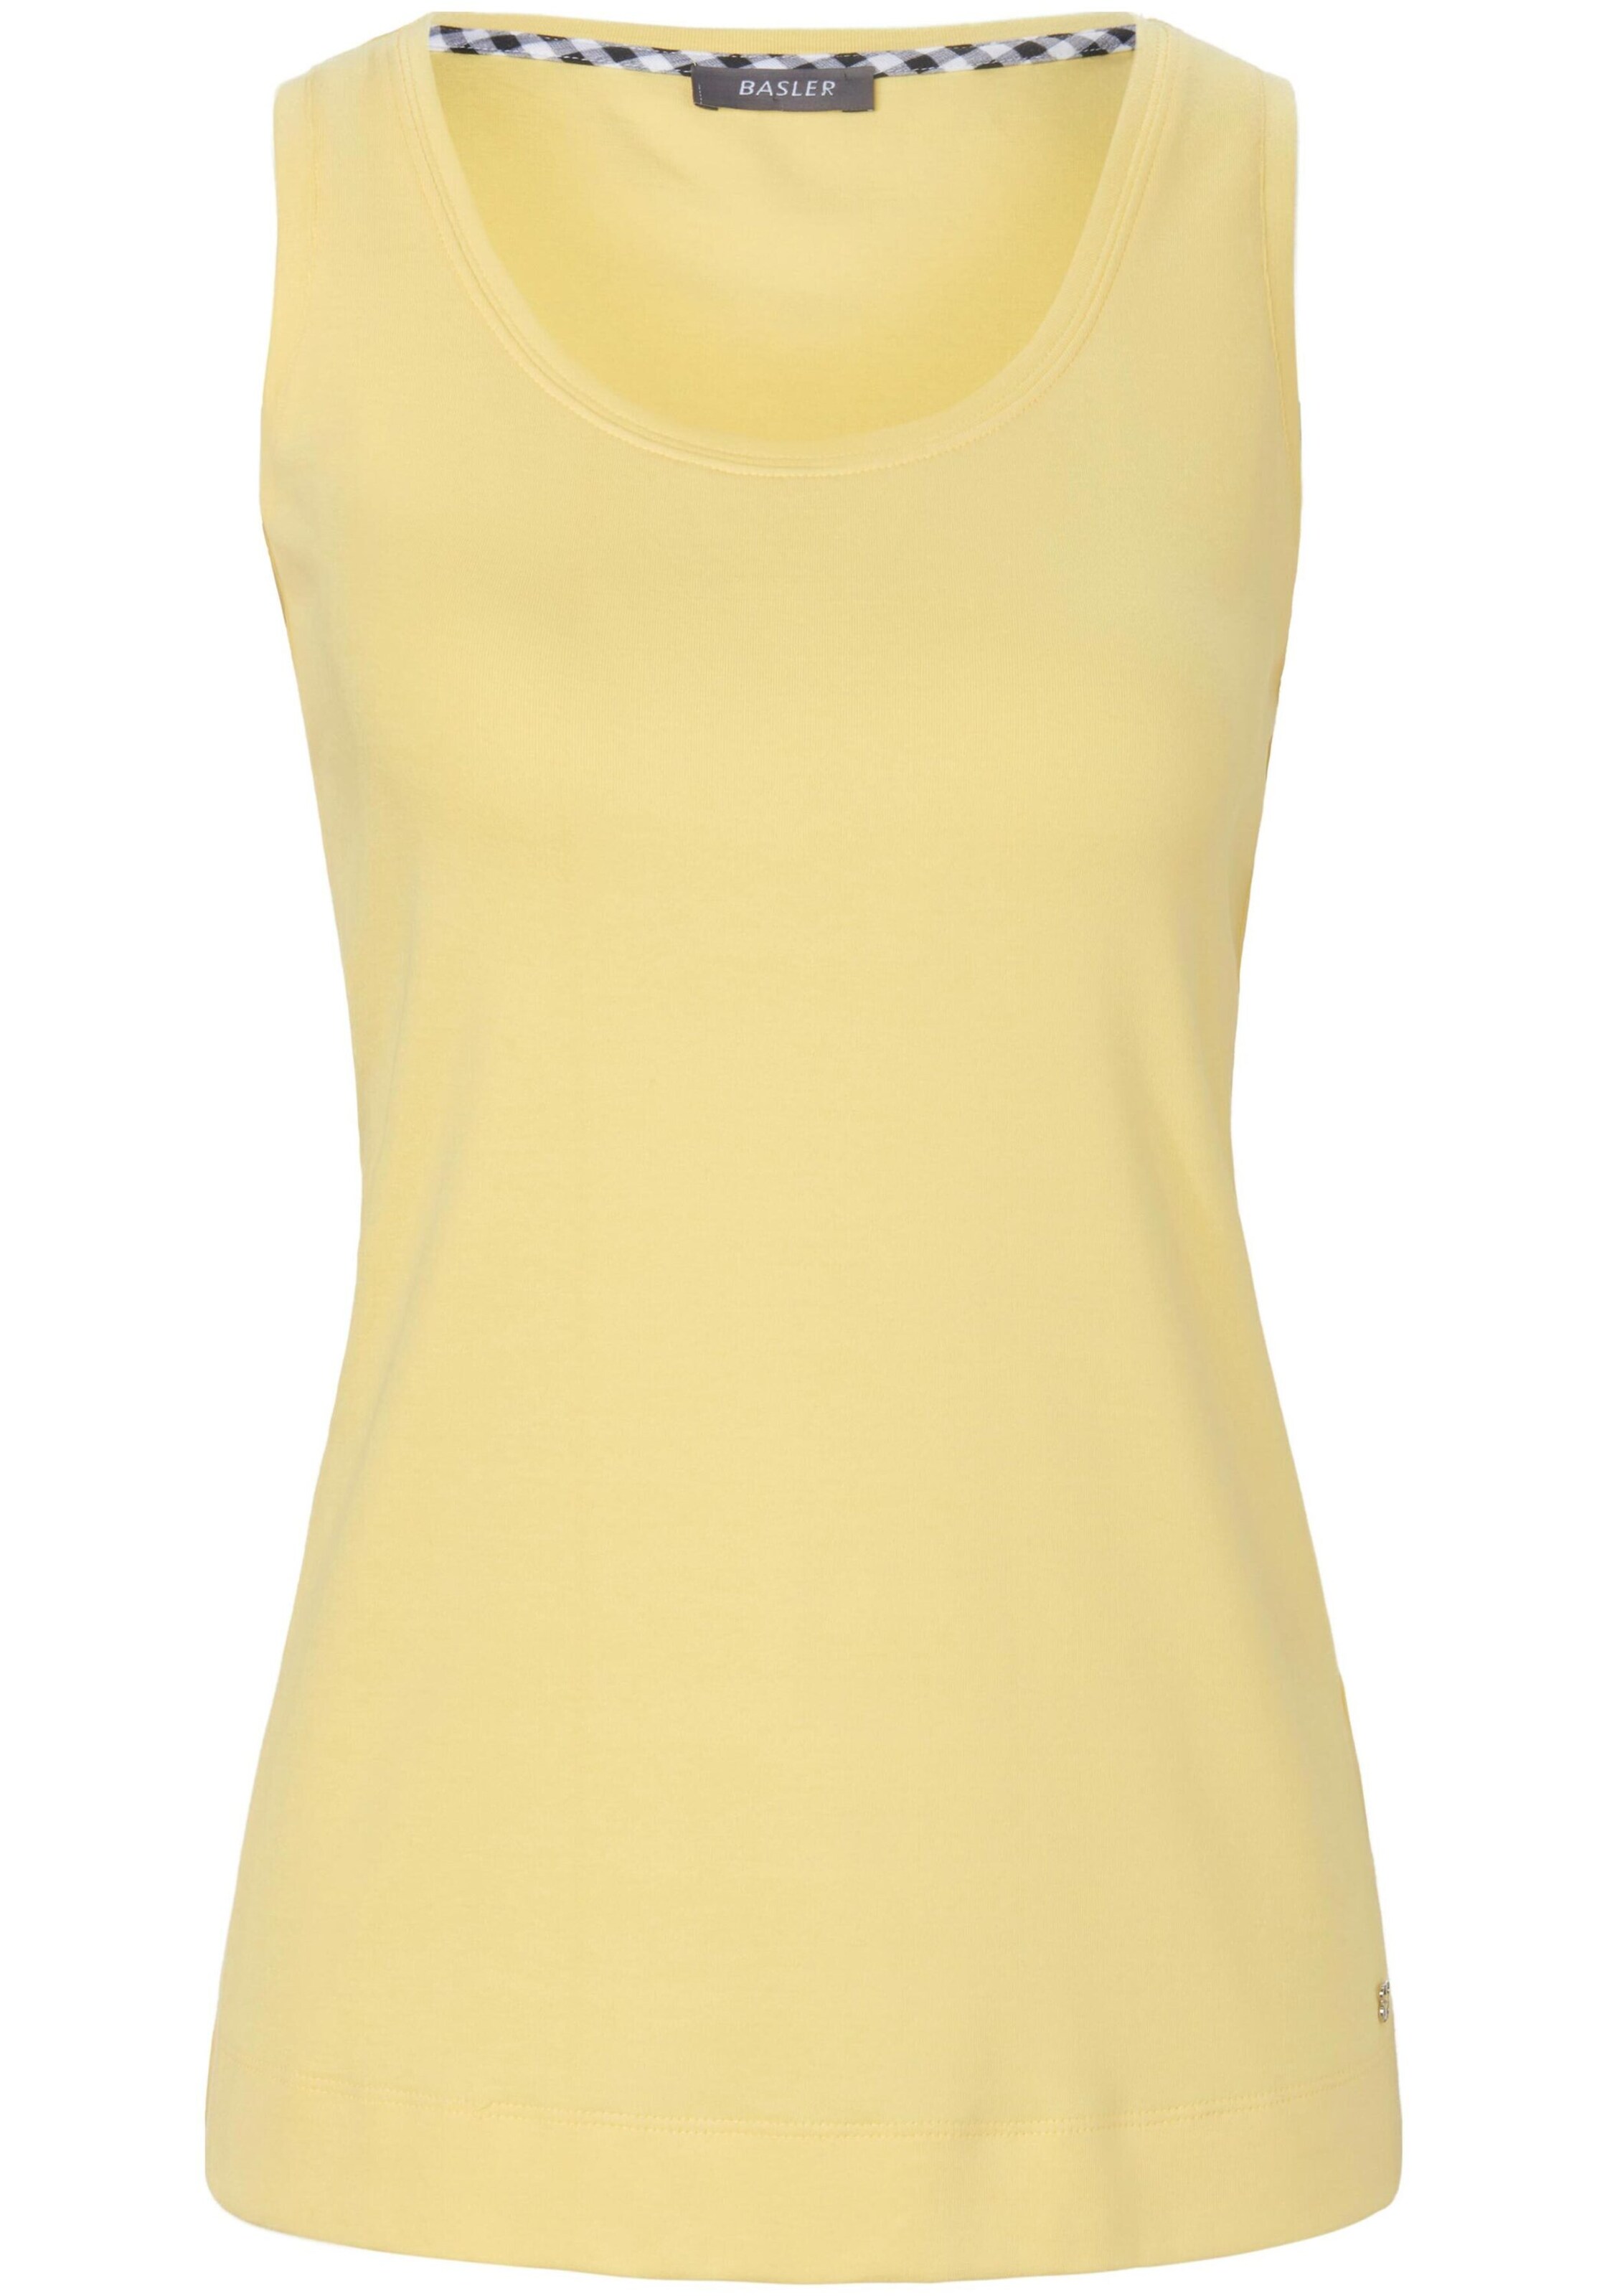 Frauen Große Größen Basler Top in Gelb - CR49559